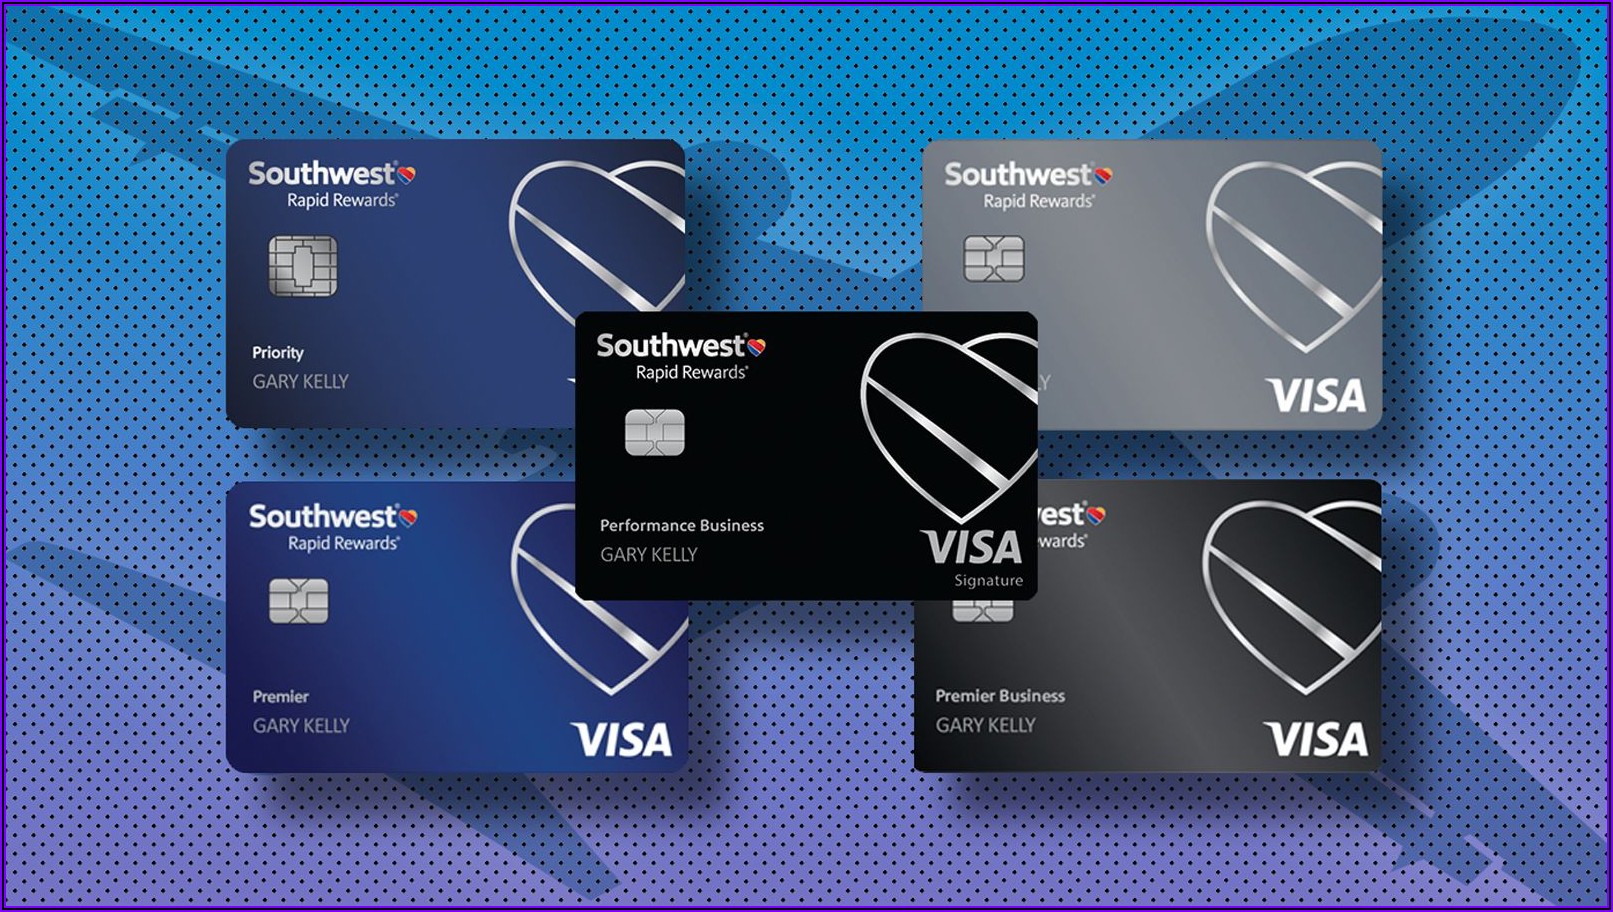 Southwest Premier Business Card Application